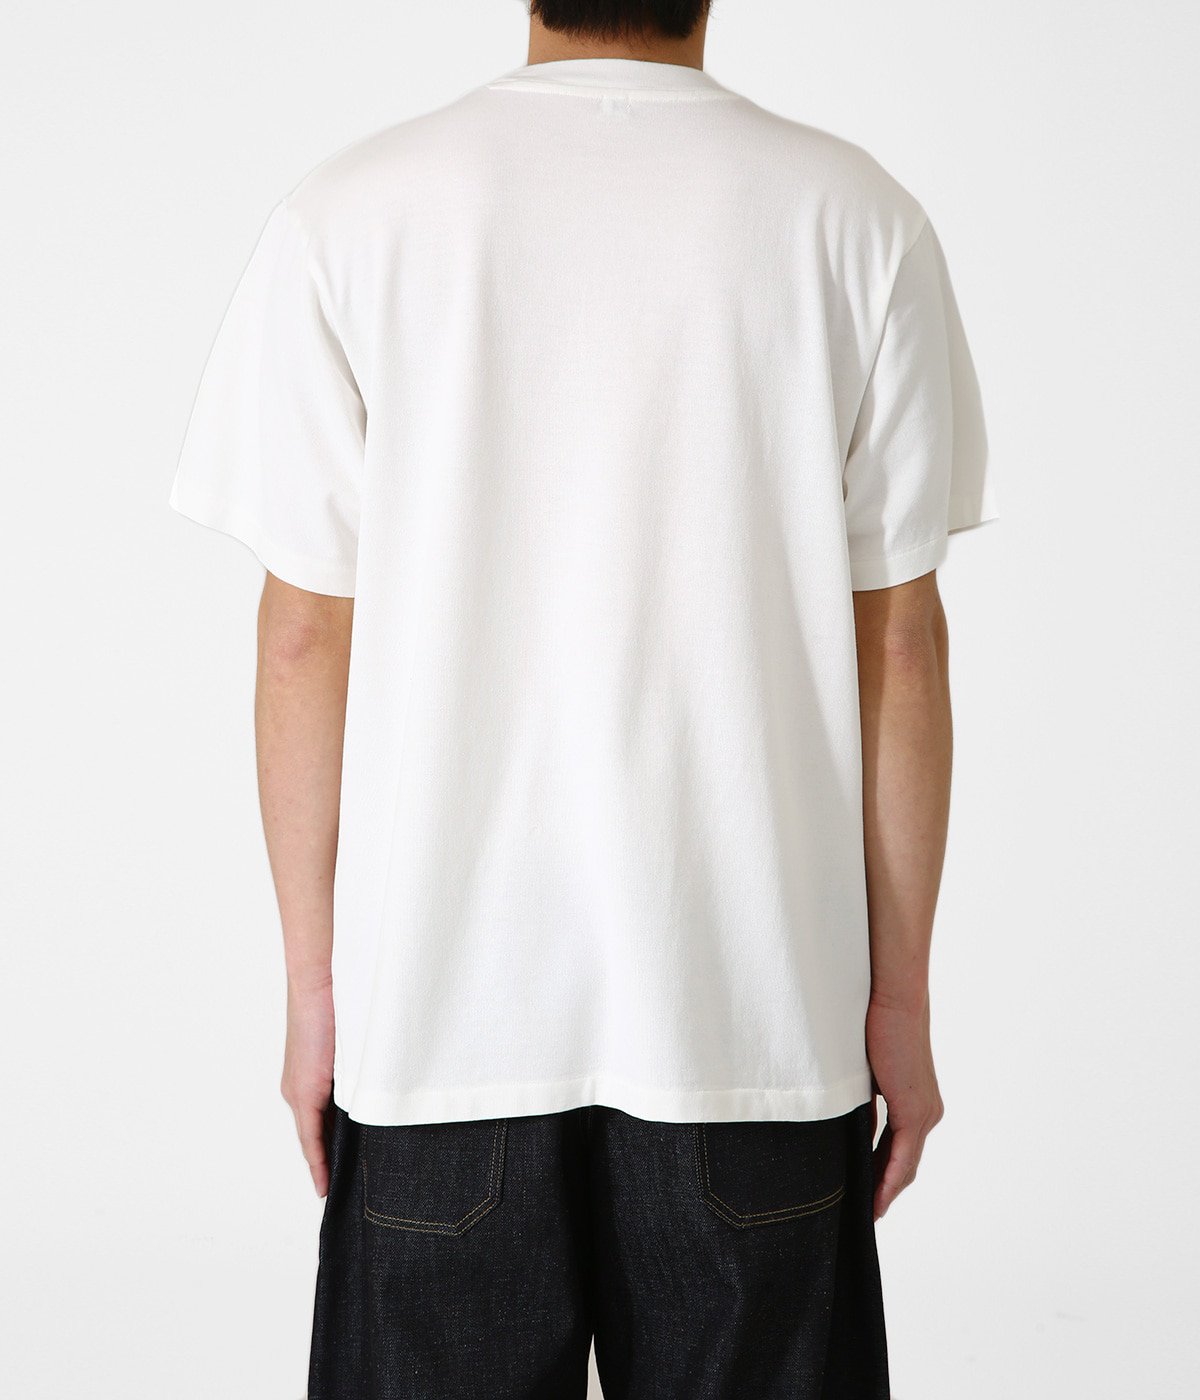 Edel Plain T-shirt